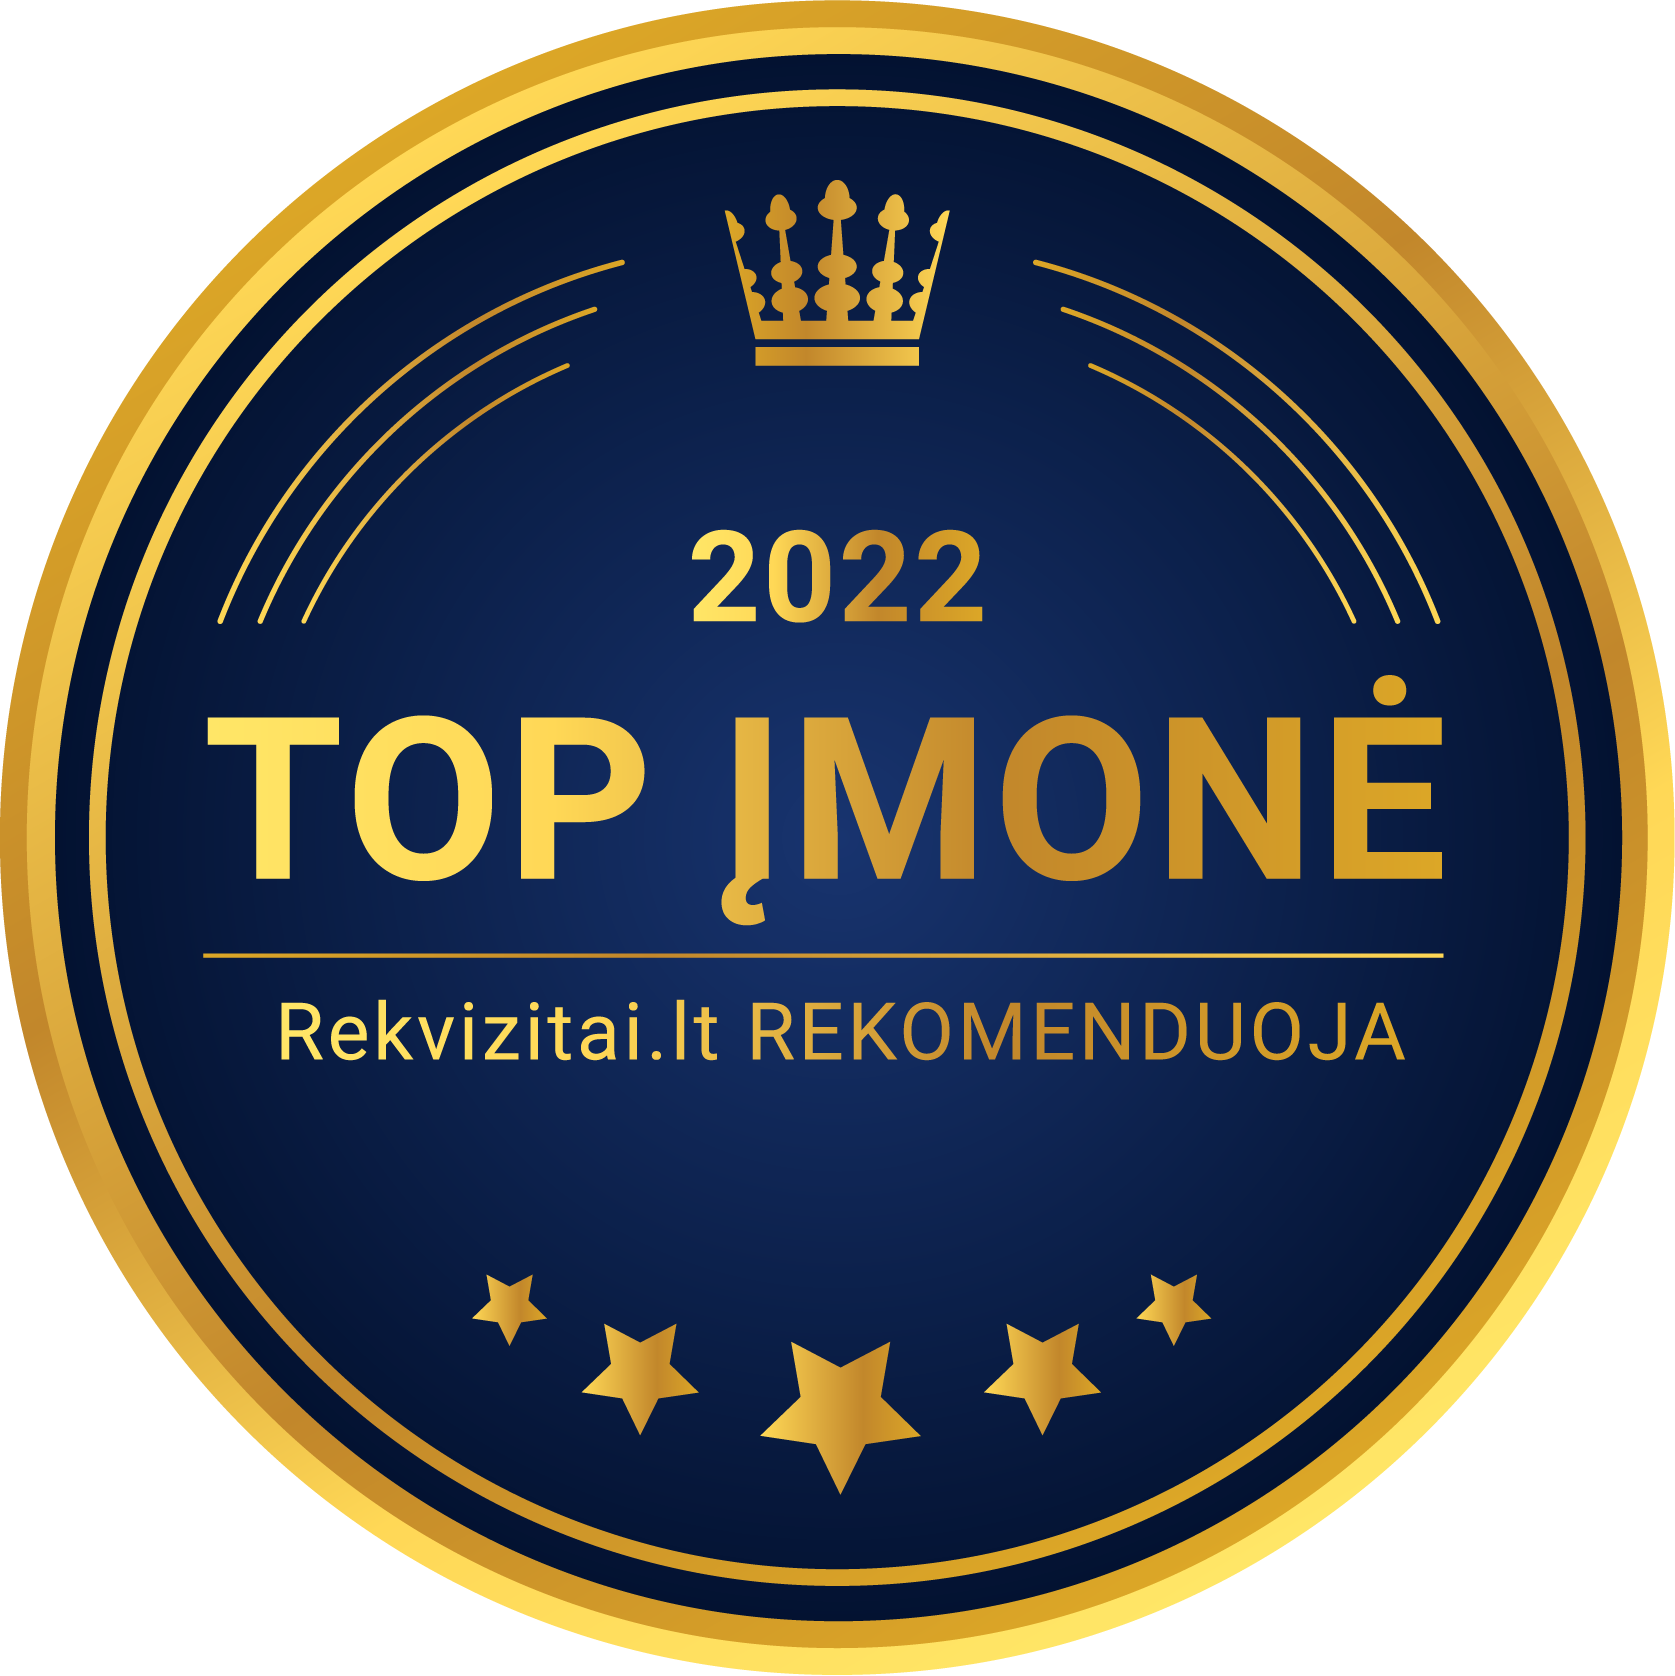 Top imone 2022